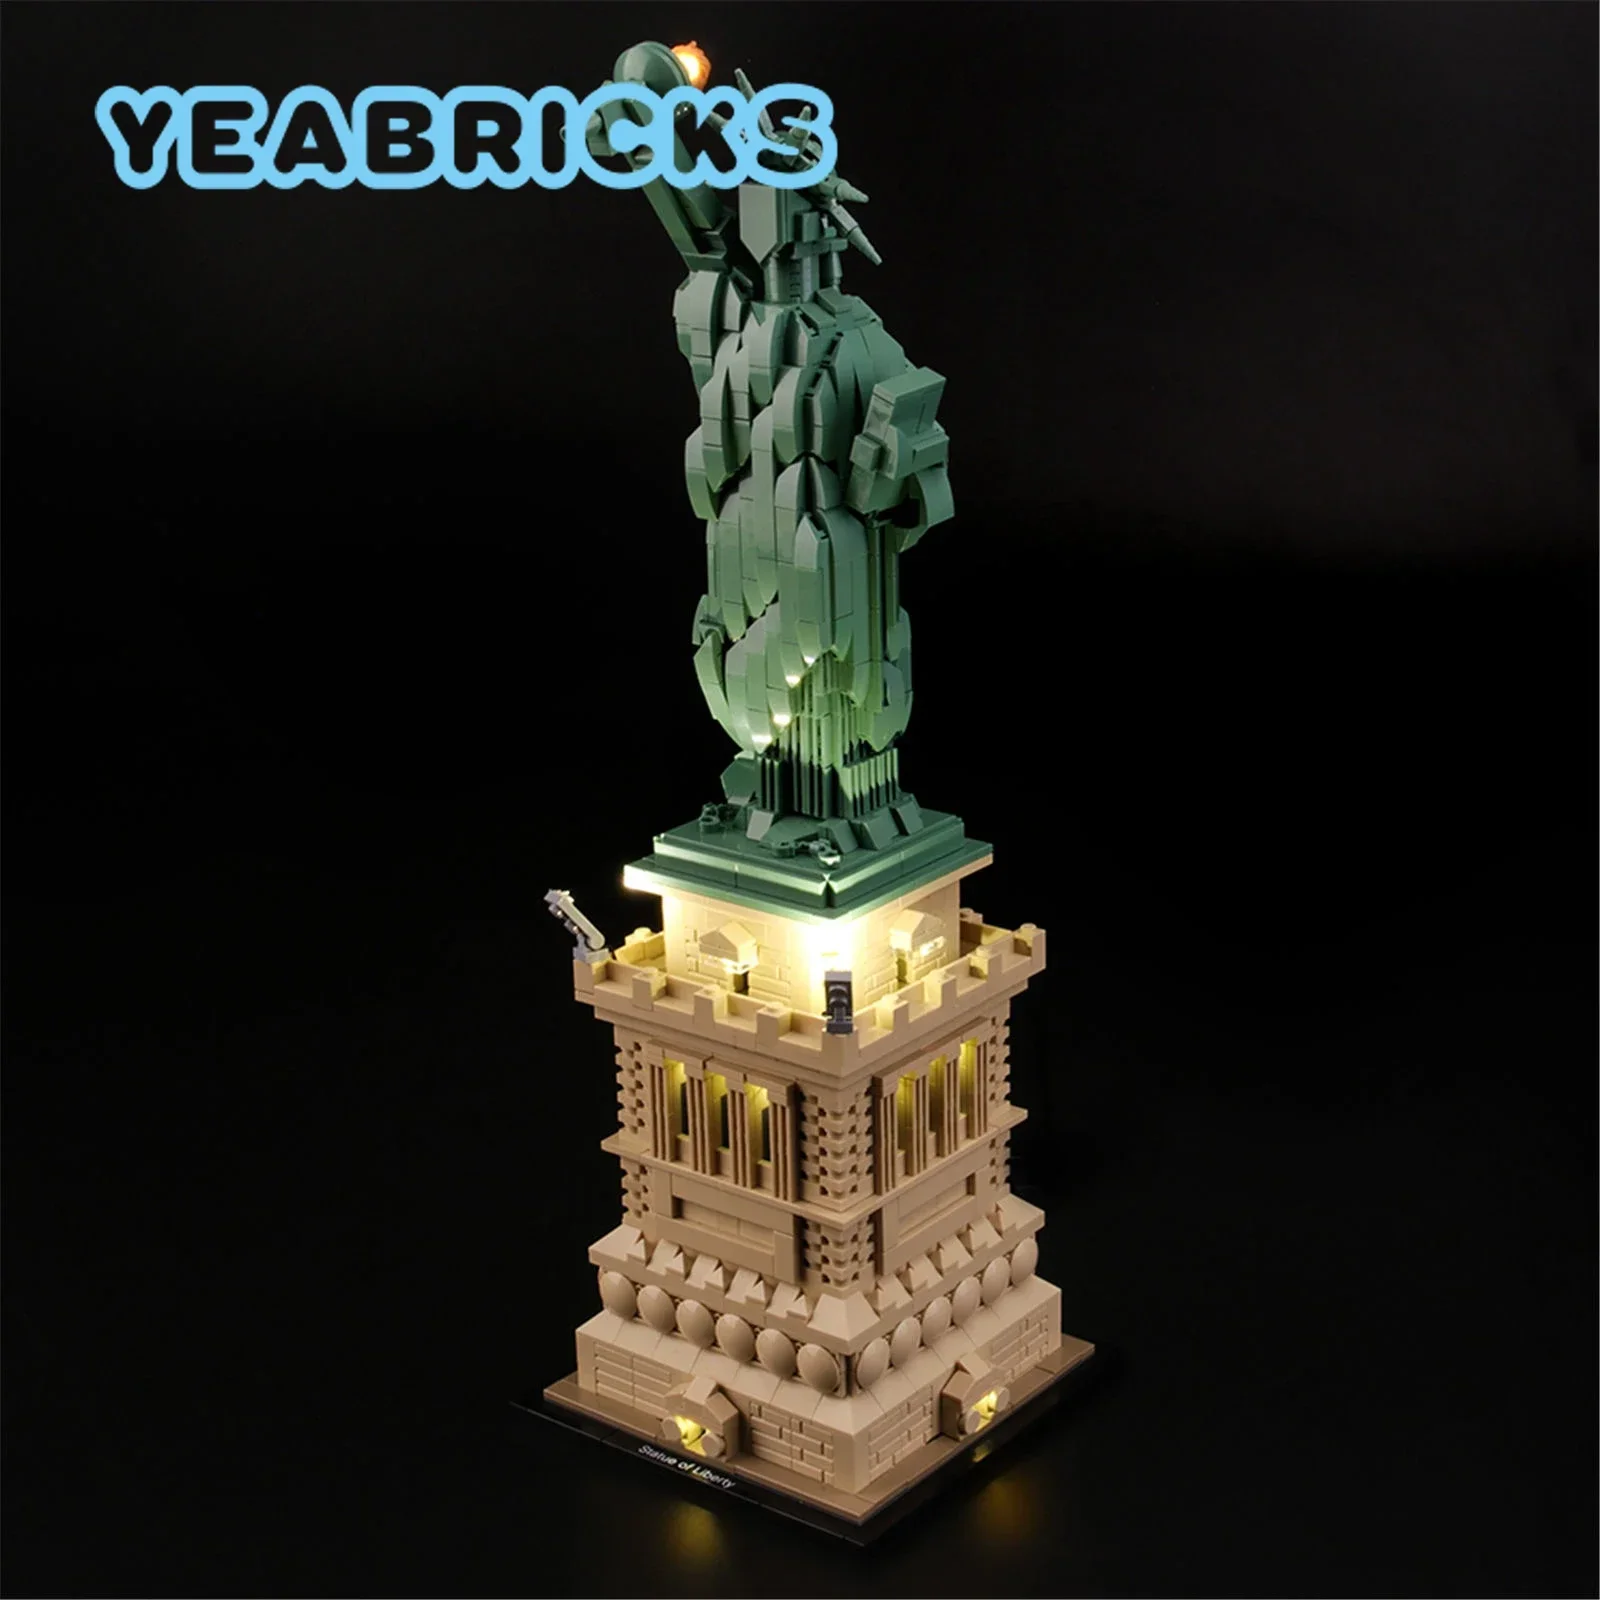 

Конструктор YEABRICKS со светодиодной подсветкой для 21042 года, набор строительных блоков для статуи Свободы (не входит в комплект), детские игрушки